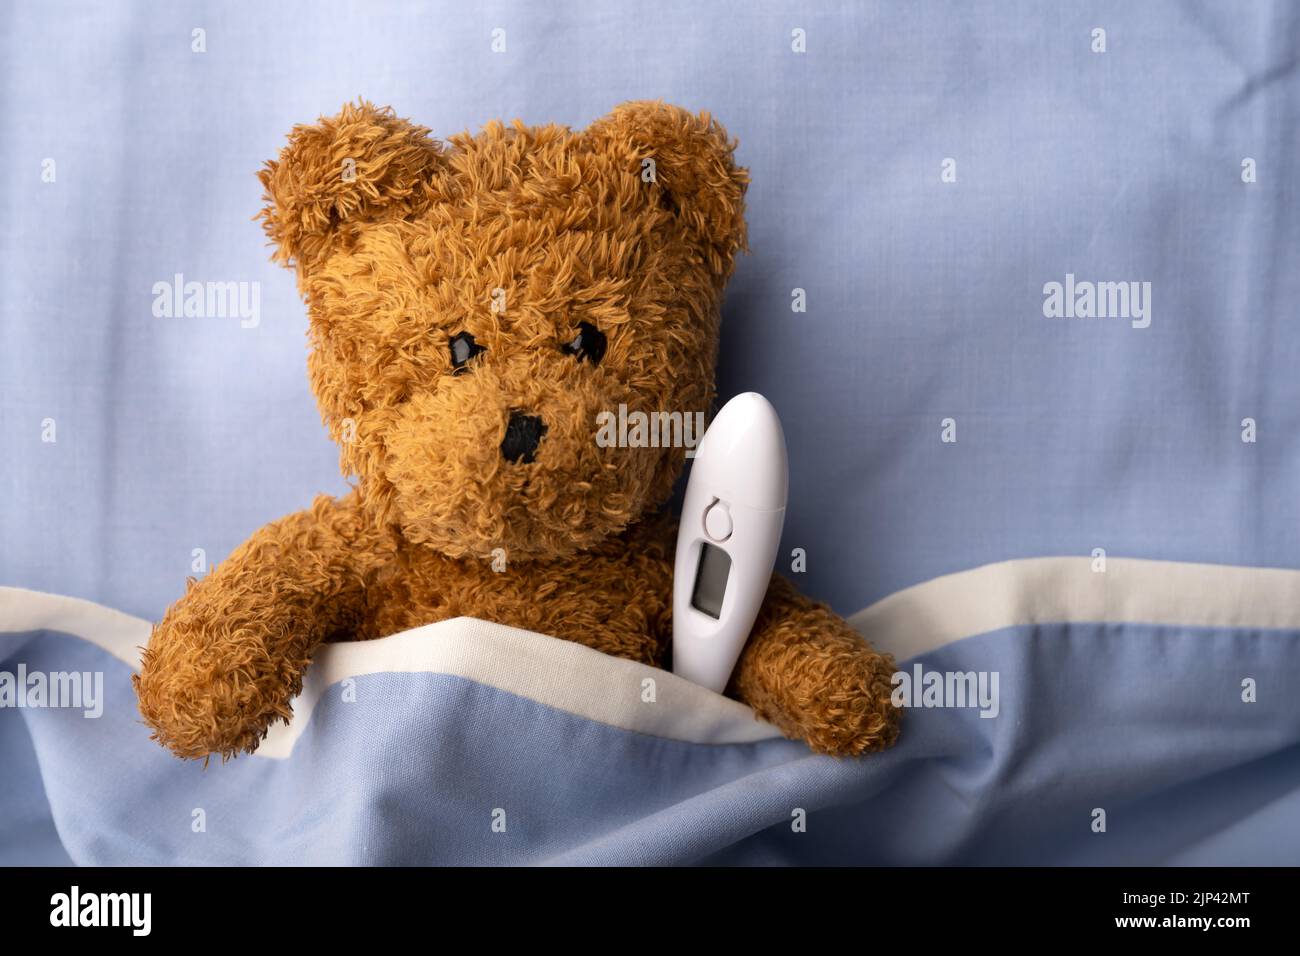 Osito de peluche enfermo en la cama del hospital con termómetro. Concepto de medicina pediátrica y infantil Foto de stock